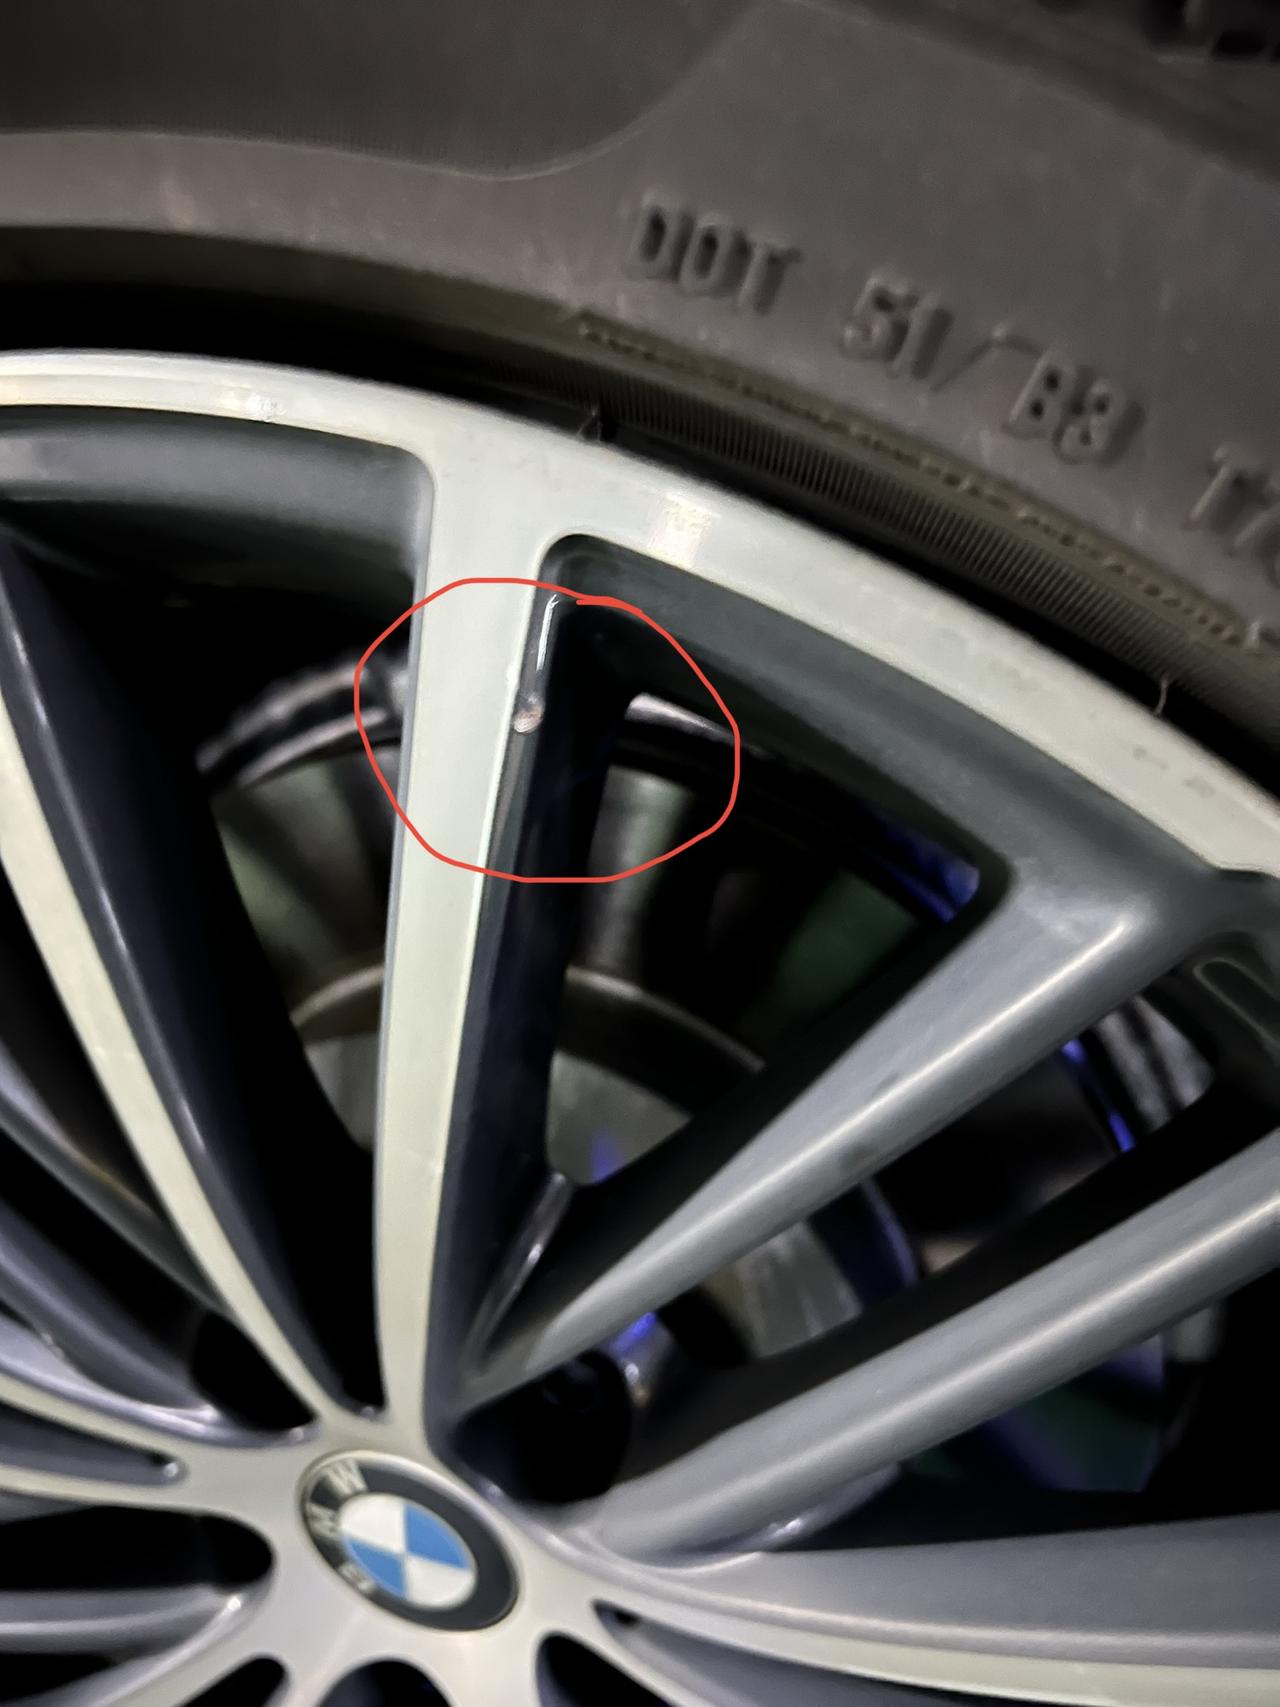 宝马5系 停车习惯性检查发现轮胎侧面掉了一块，轮毂挂了。还有轮毂像是磕掉了一块，有点没搞明白咋弄的。下这个影响行车安